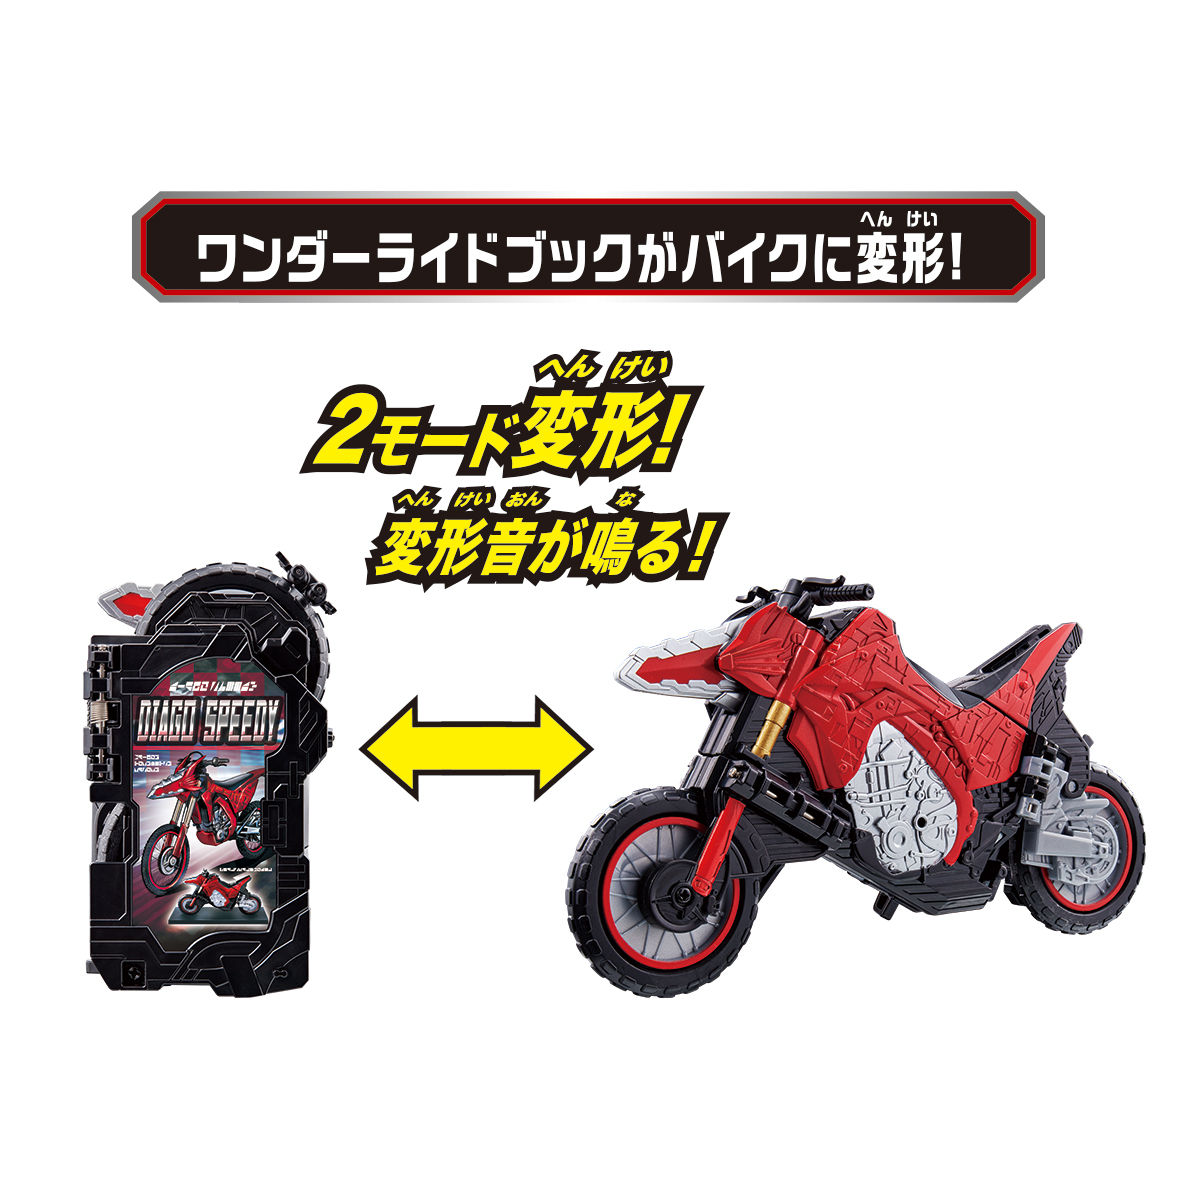 仮面ライダーセイバー『バイク変形 DXディアゴスピーディーワンダーライドブック』変身なりきり-005